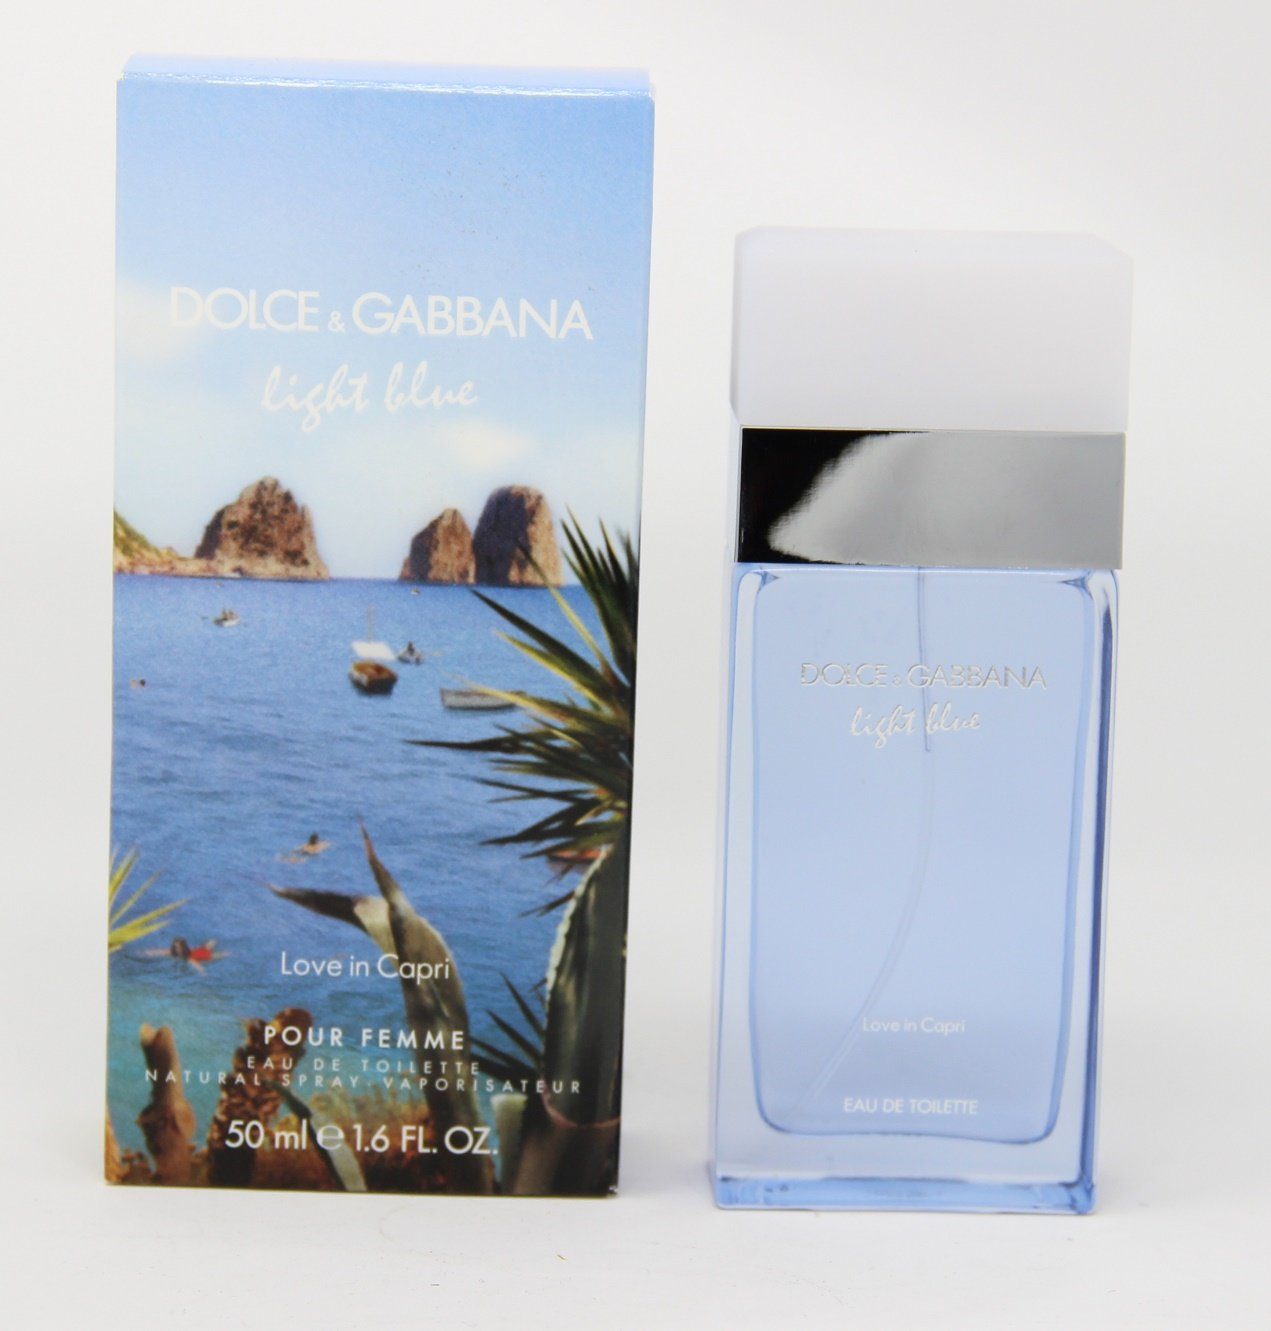 DOLCE & GABBANA Eau in Love Spray de Light Toilette Gabbana Dolce Toilette Eau 50ml Capri & de Blue